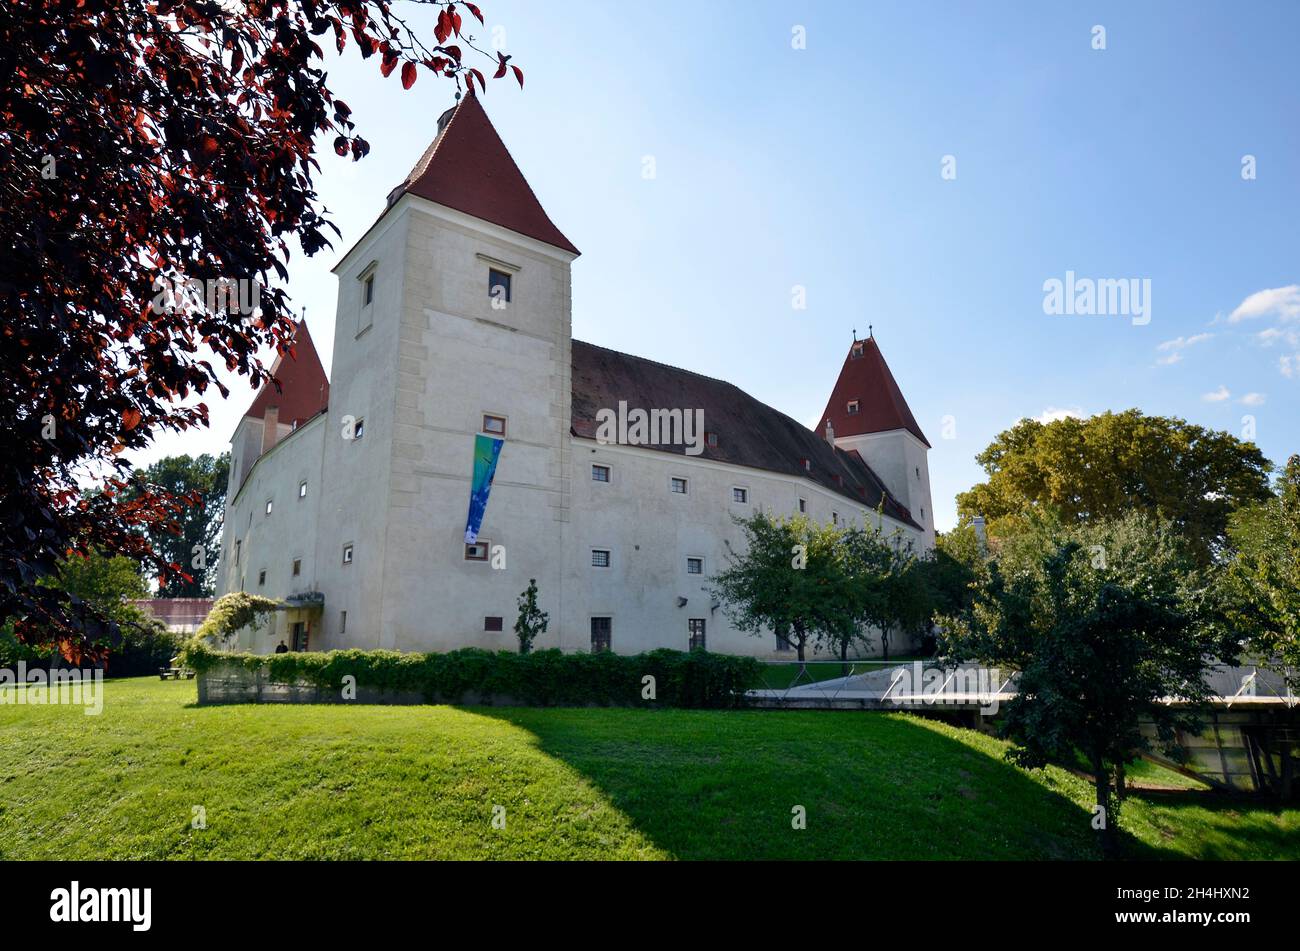 Österreich, Schloss Orth in Niederösterreich, ehemaliges Wasserschloss, das heute als Museum und Informationszentrum des Nationalparks Donau-Auen genutzt wird Stockfoto